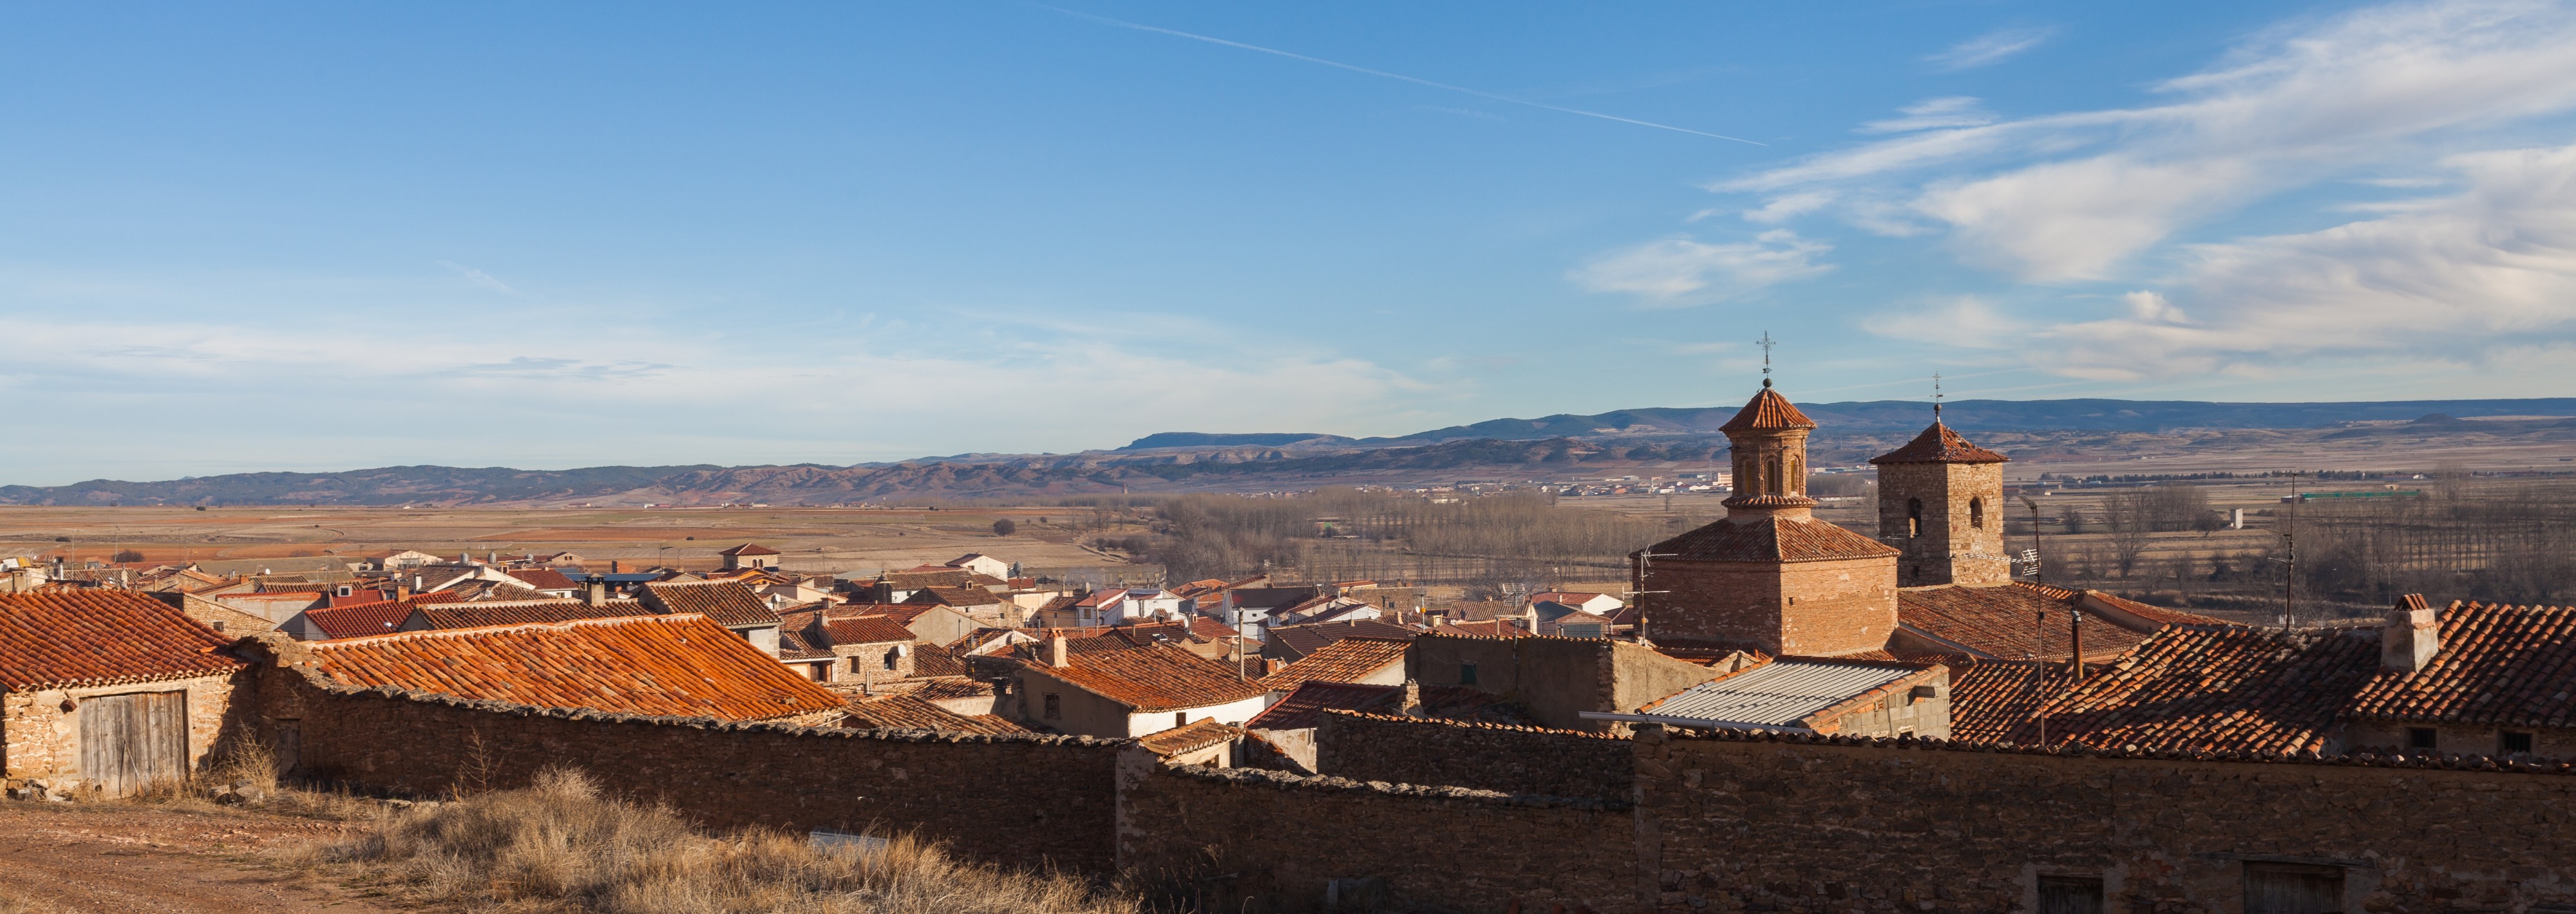 El Poyo del Cid, Teruel, España, 2014-01-08, DD 05